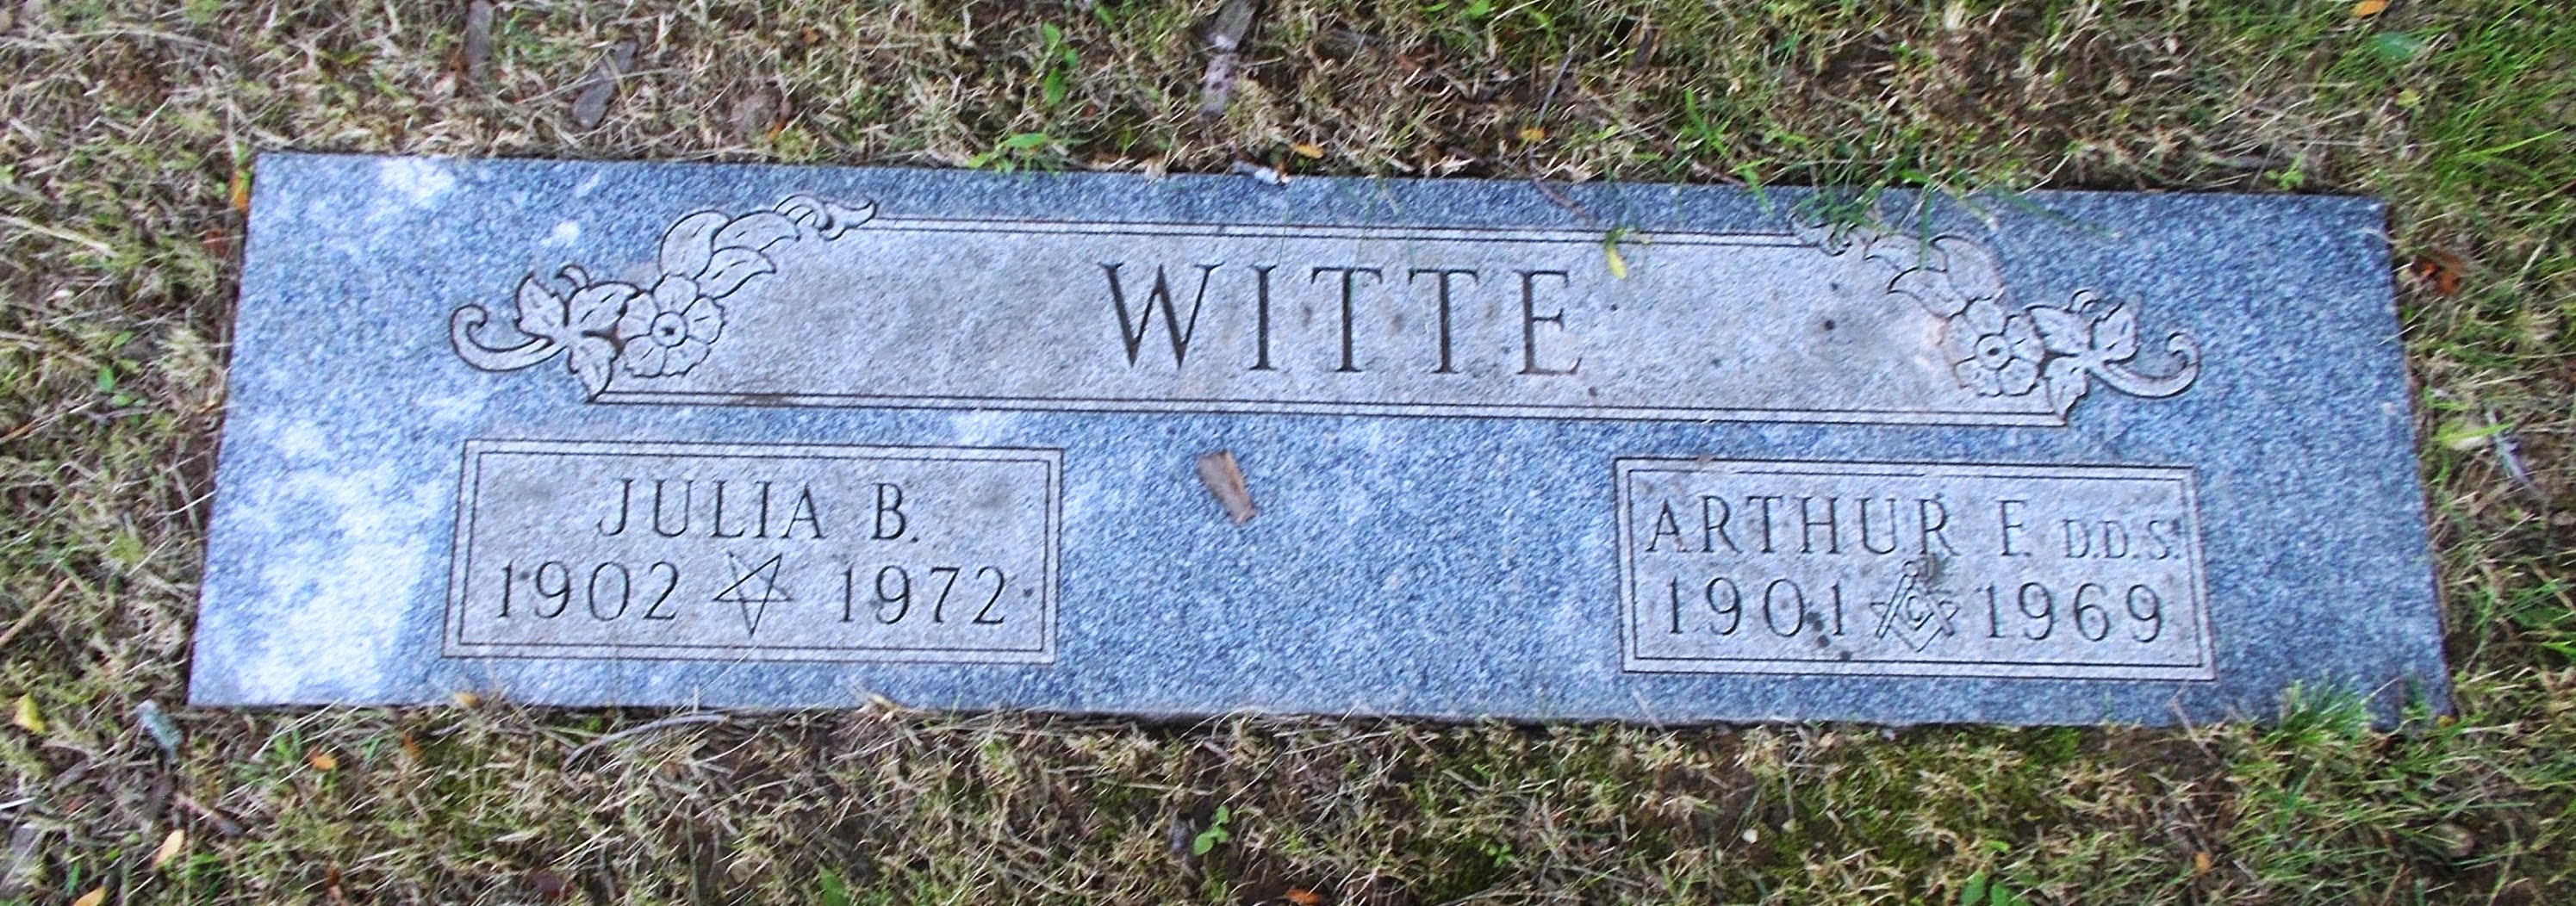 Arthur E Witte